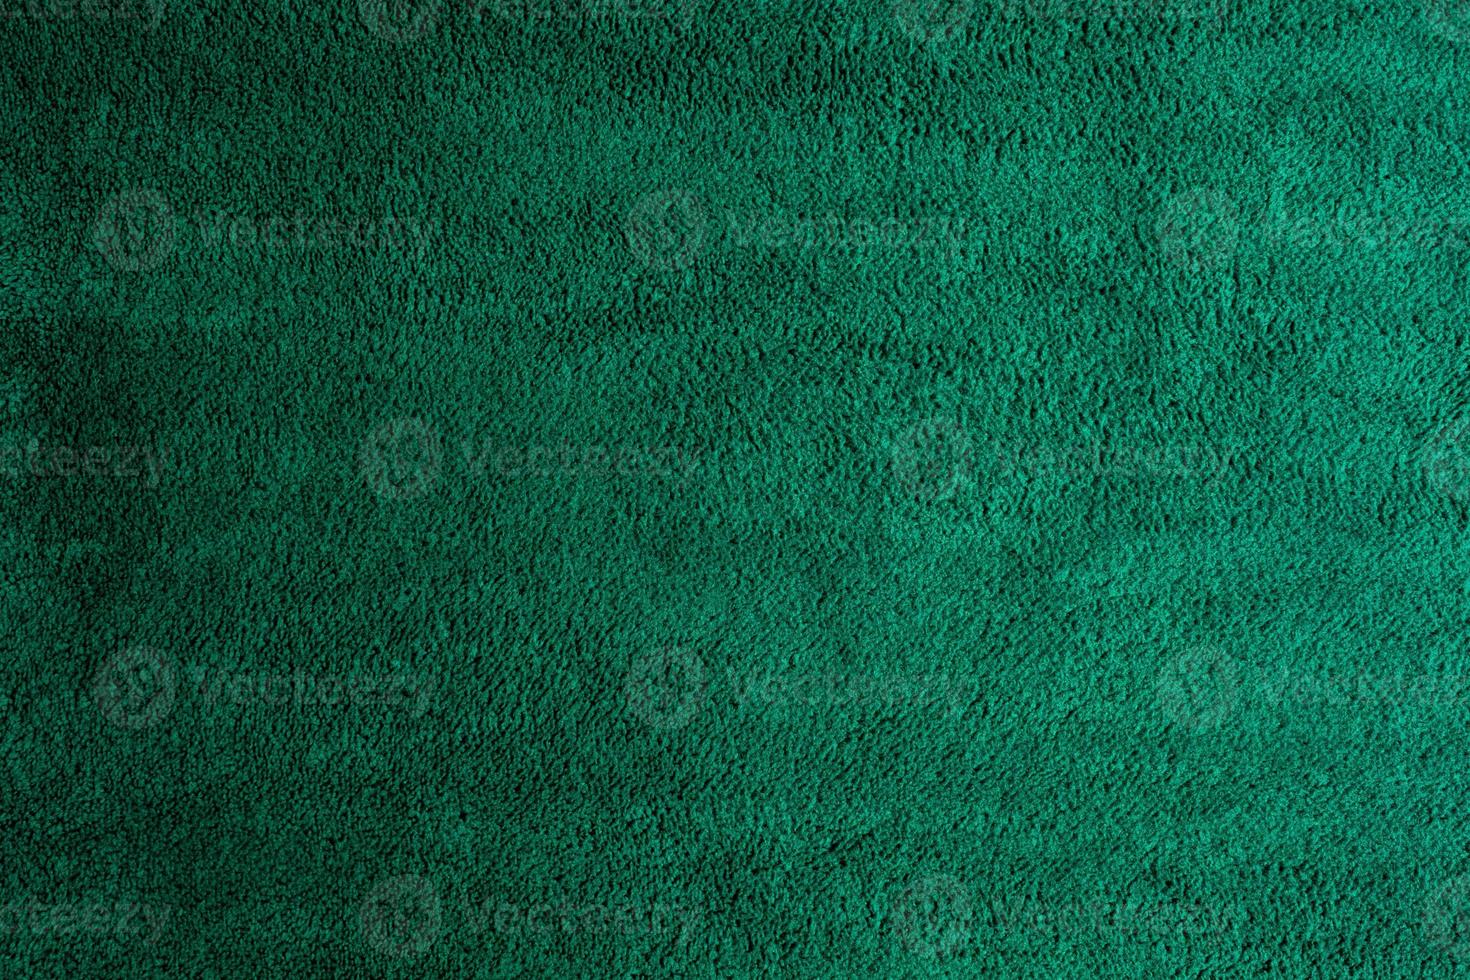 groene stof textuur achtergrond, abstract, close-up textuur van doek foto